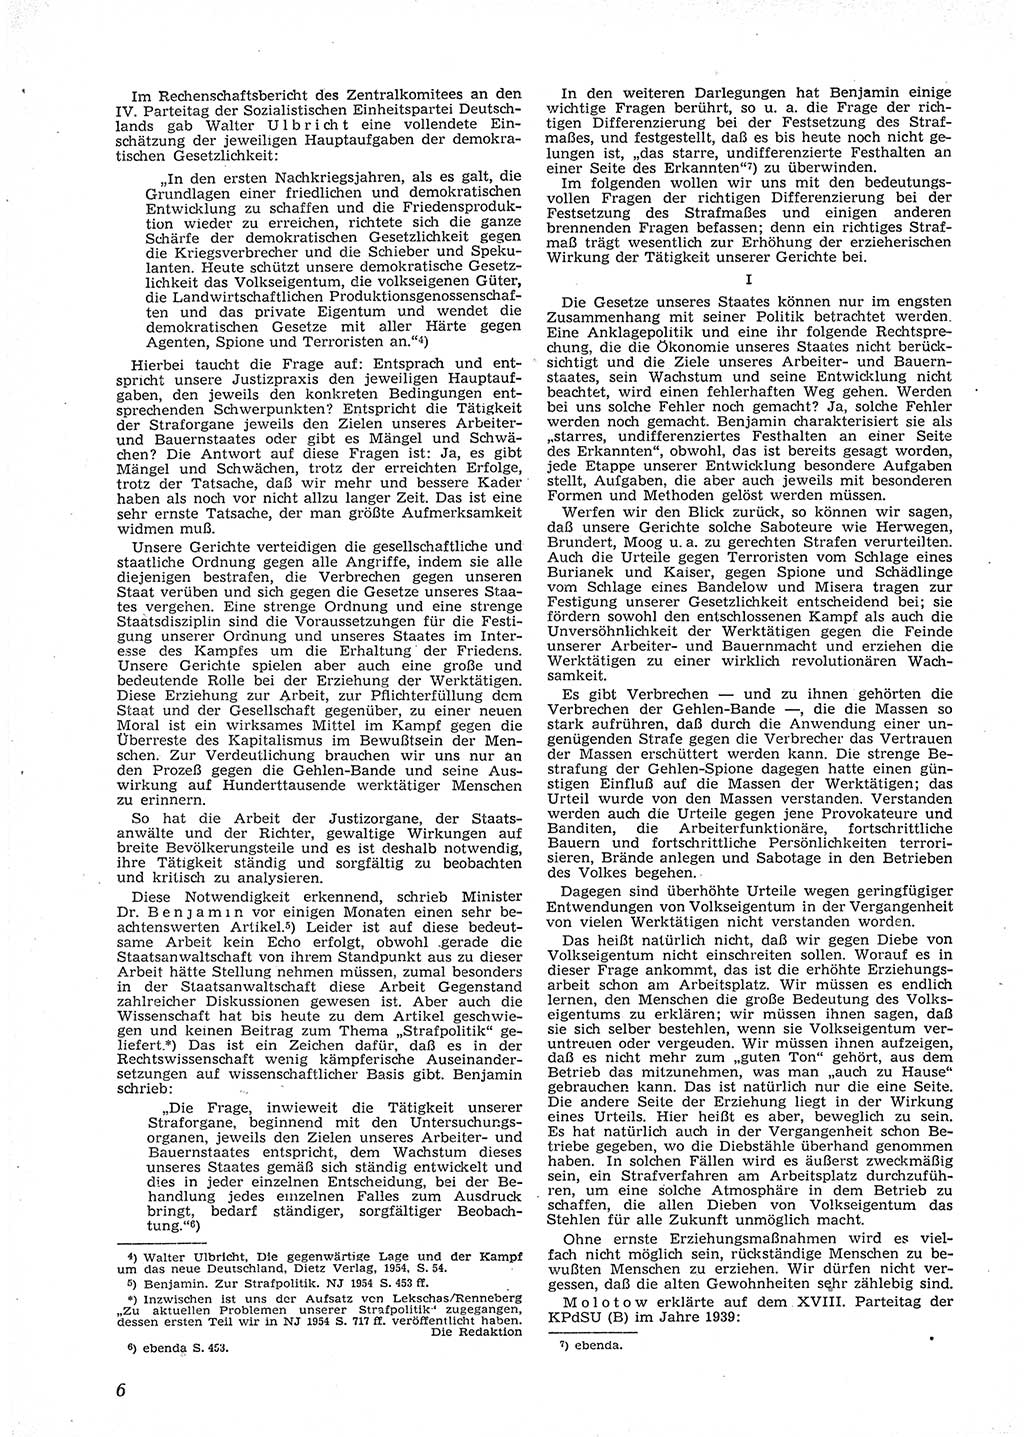 Neue Justiz (NJ), Zeitschrift für Recht und Rechtswissenschaft [Deutsche Demokratische Republik (DDR)], 9. Jahrgang 1955, Seite 6 (NJ DDR 1955, S. 6)